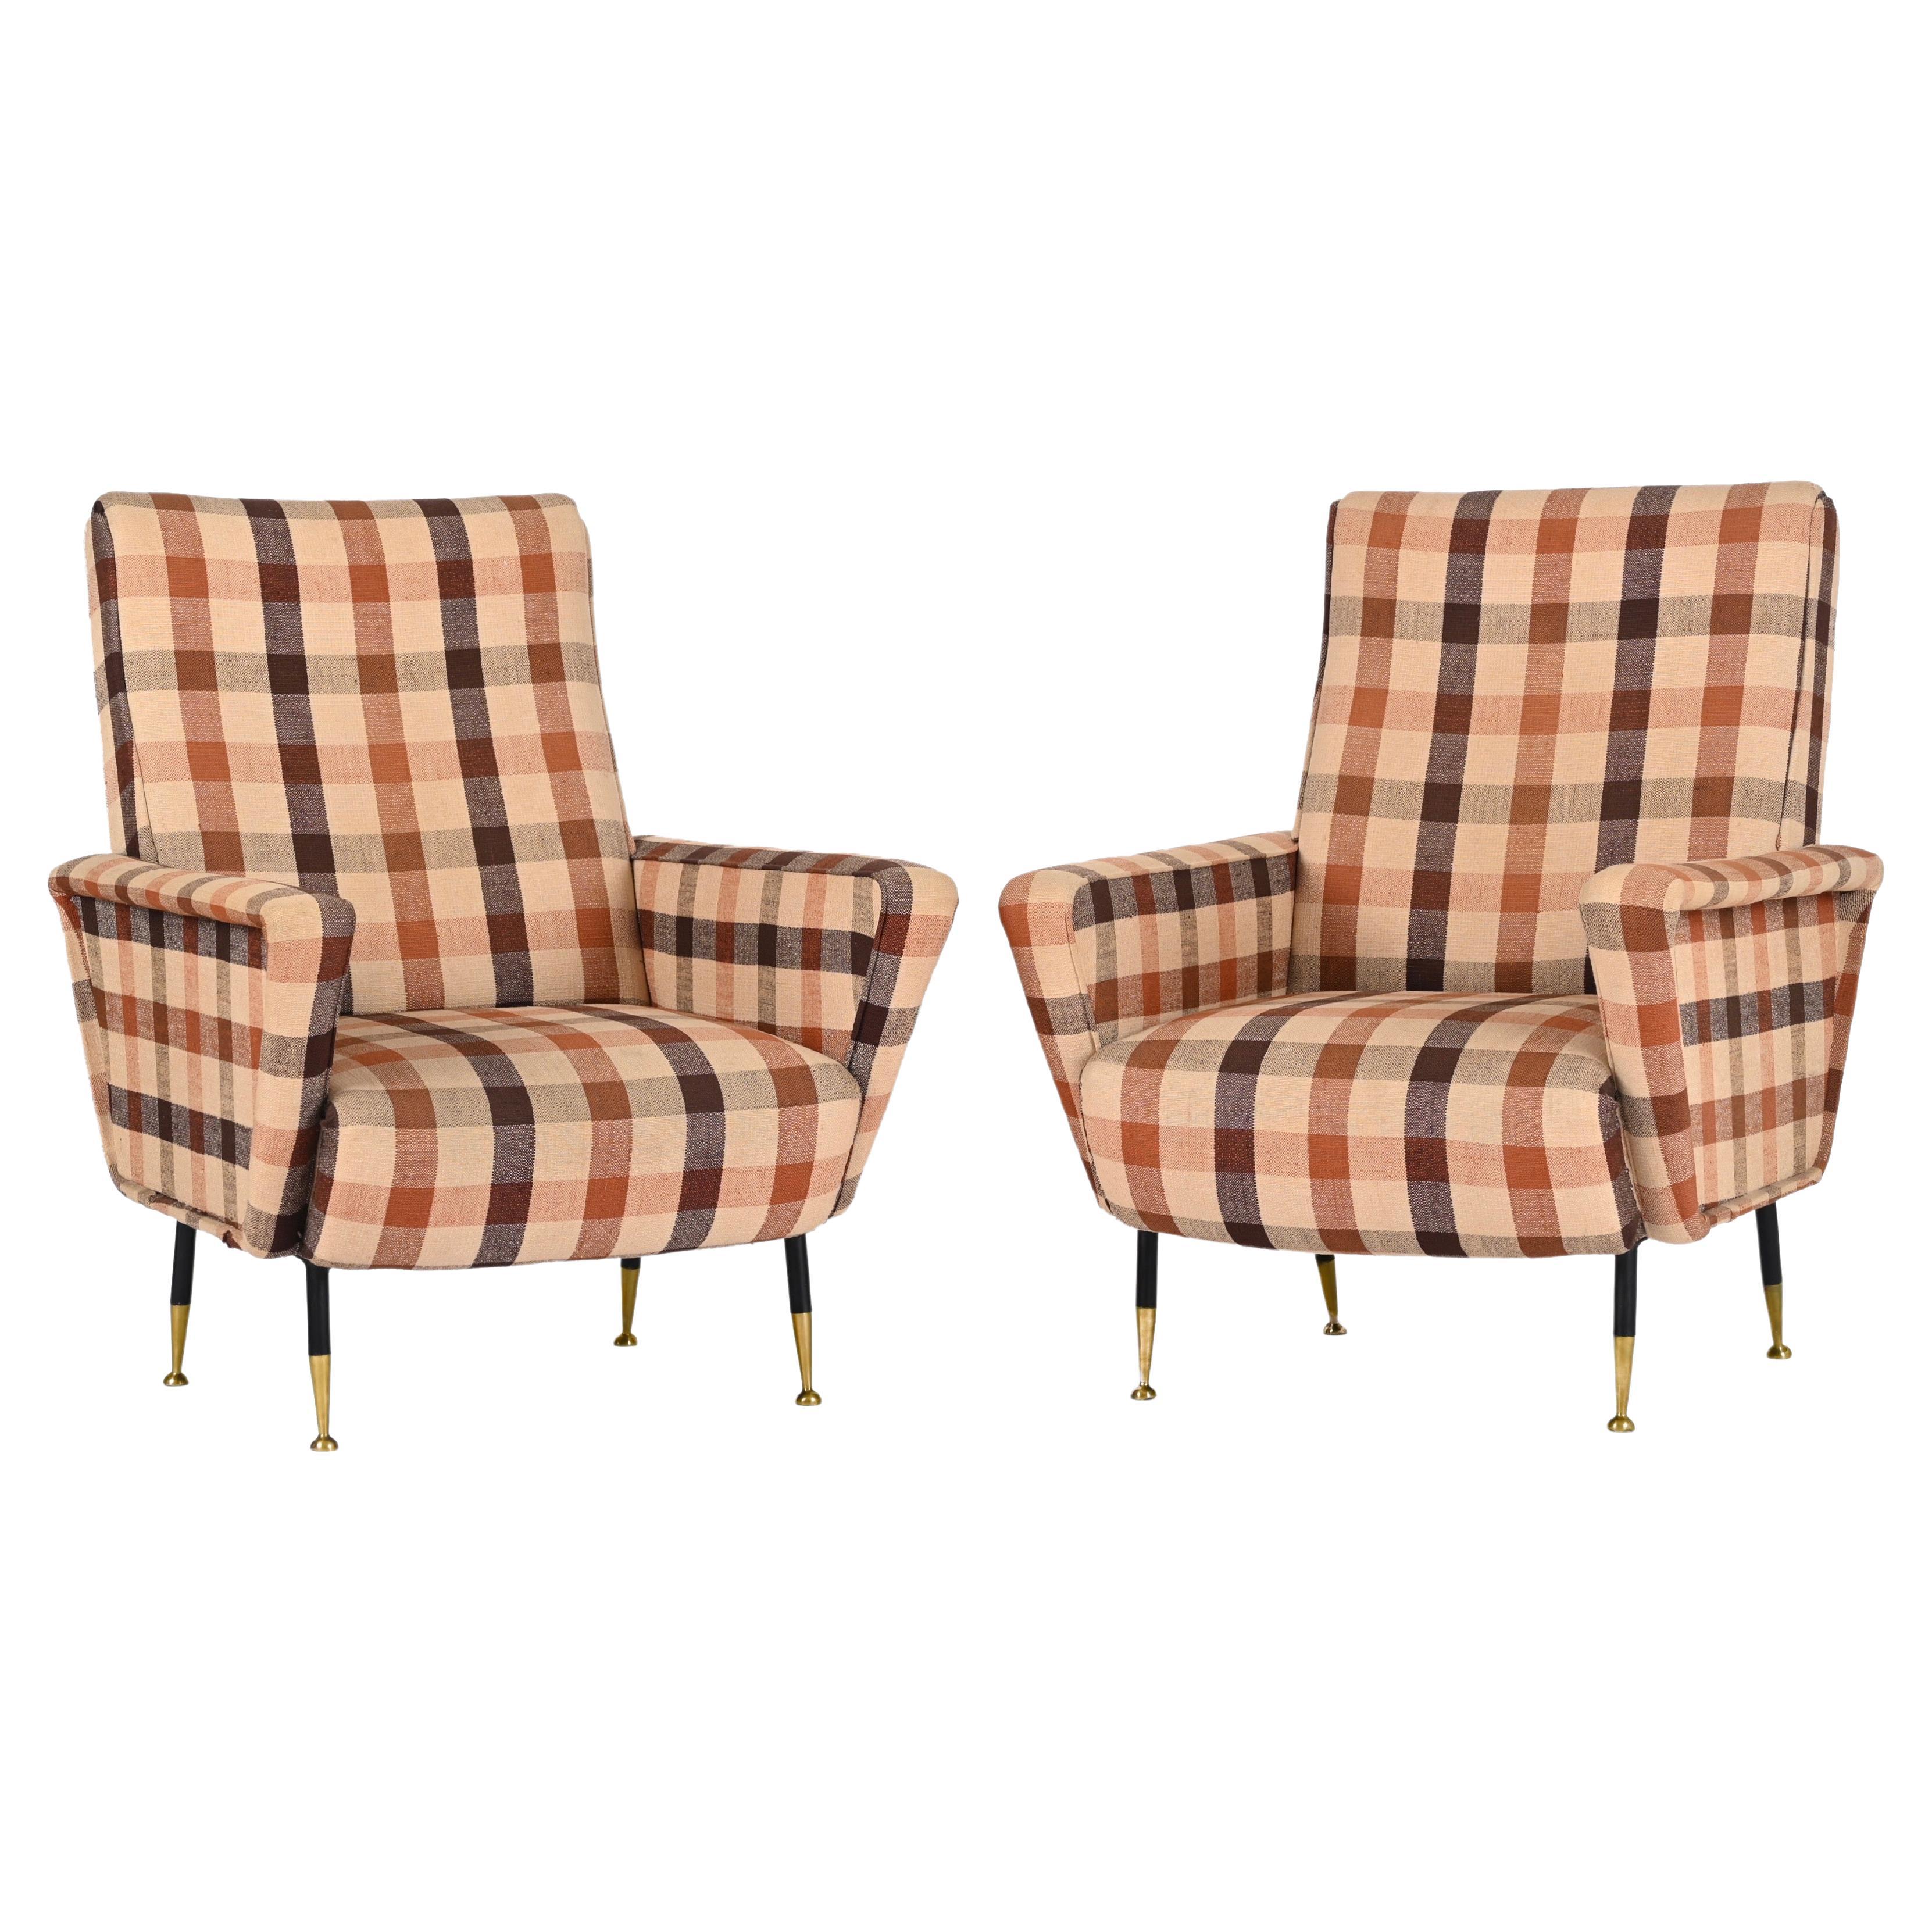 Zwei fantastische Sessel aus kariertem Stoff mit Messingfüßen aus der Jahrhundertmitte. Dieses unglaubliche Set wurde in den 1950er Jahren in Italien im Stil von Zanuso hergestellt.

Die Schönheit dieser Sessel ist auf die italienische Herstellung